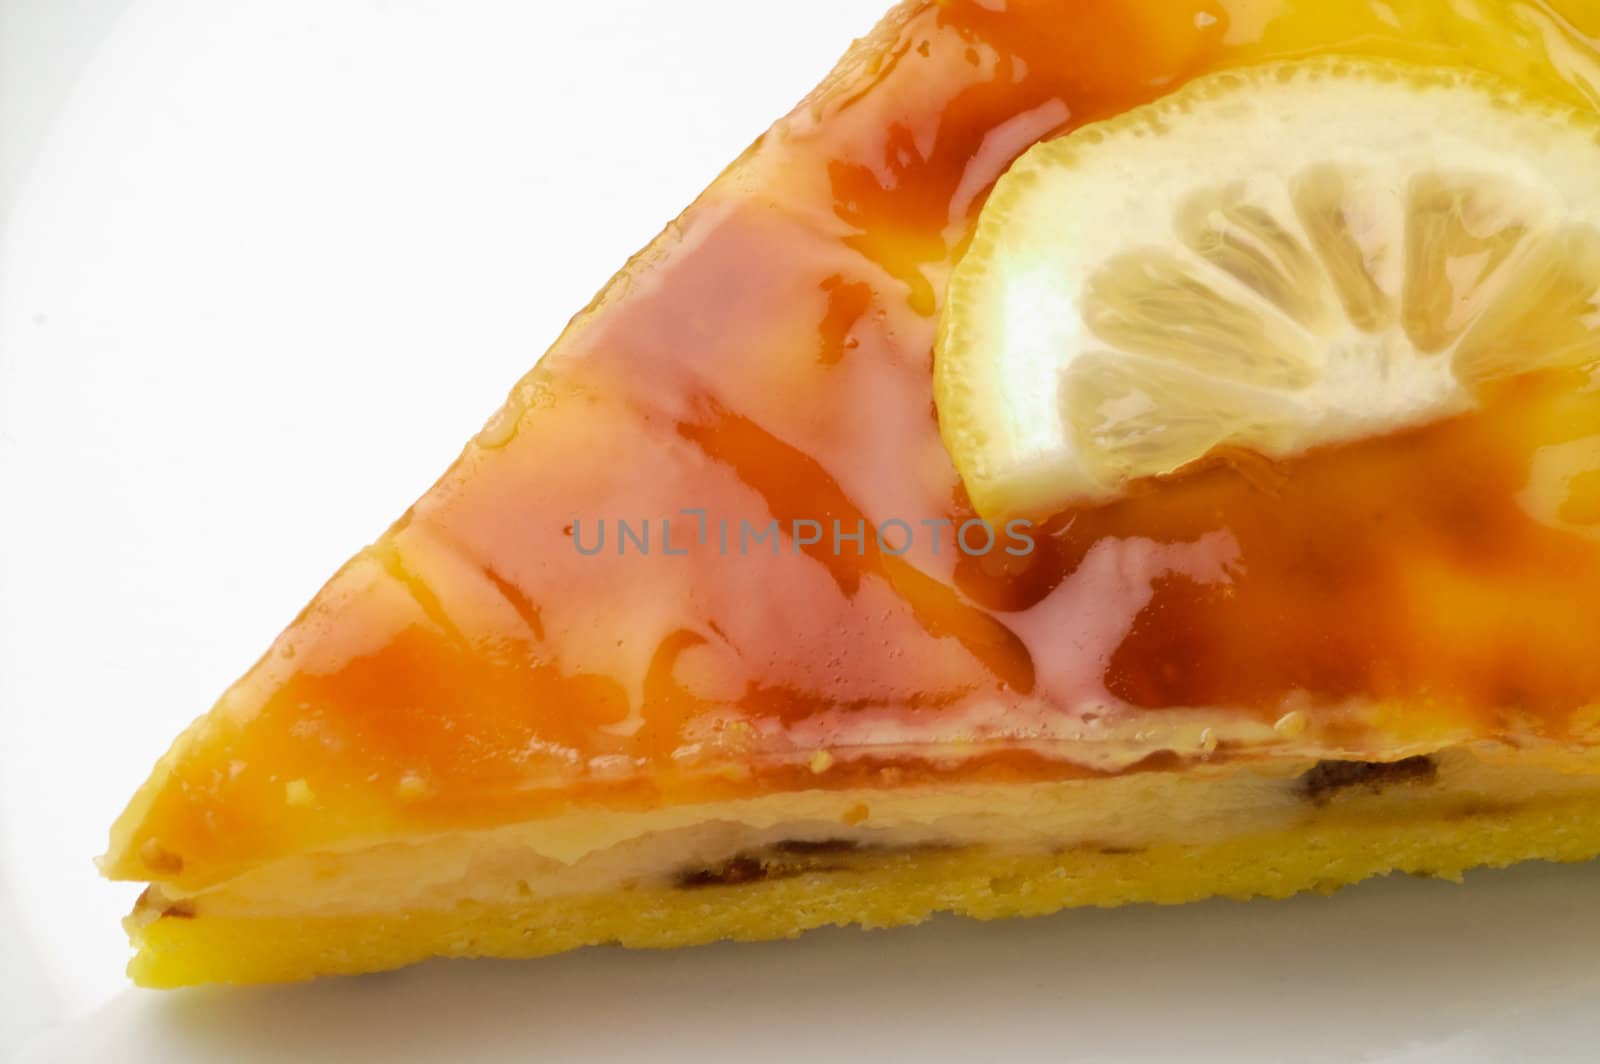 Lemon tart closeup (1) by Laborer